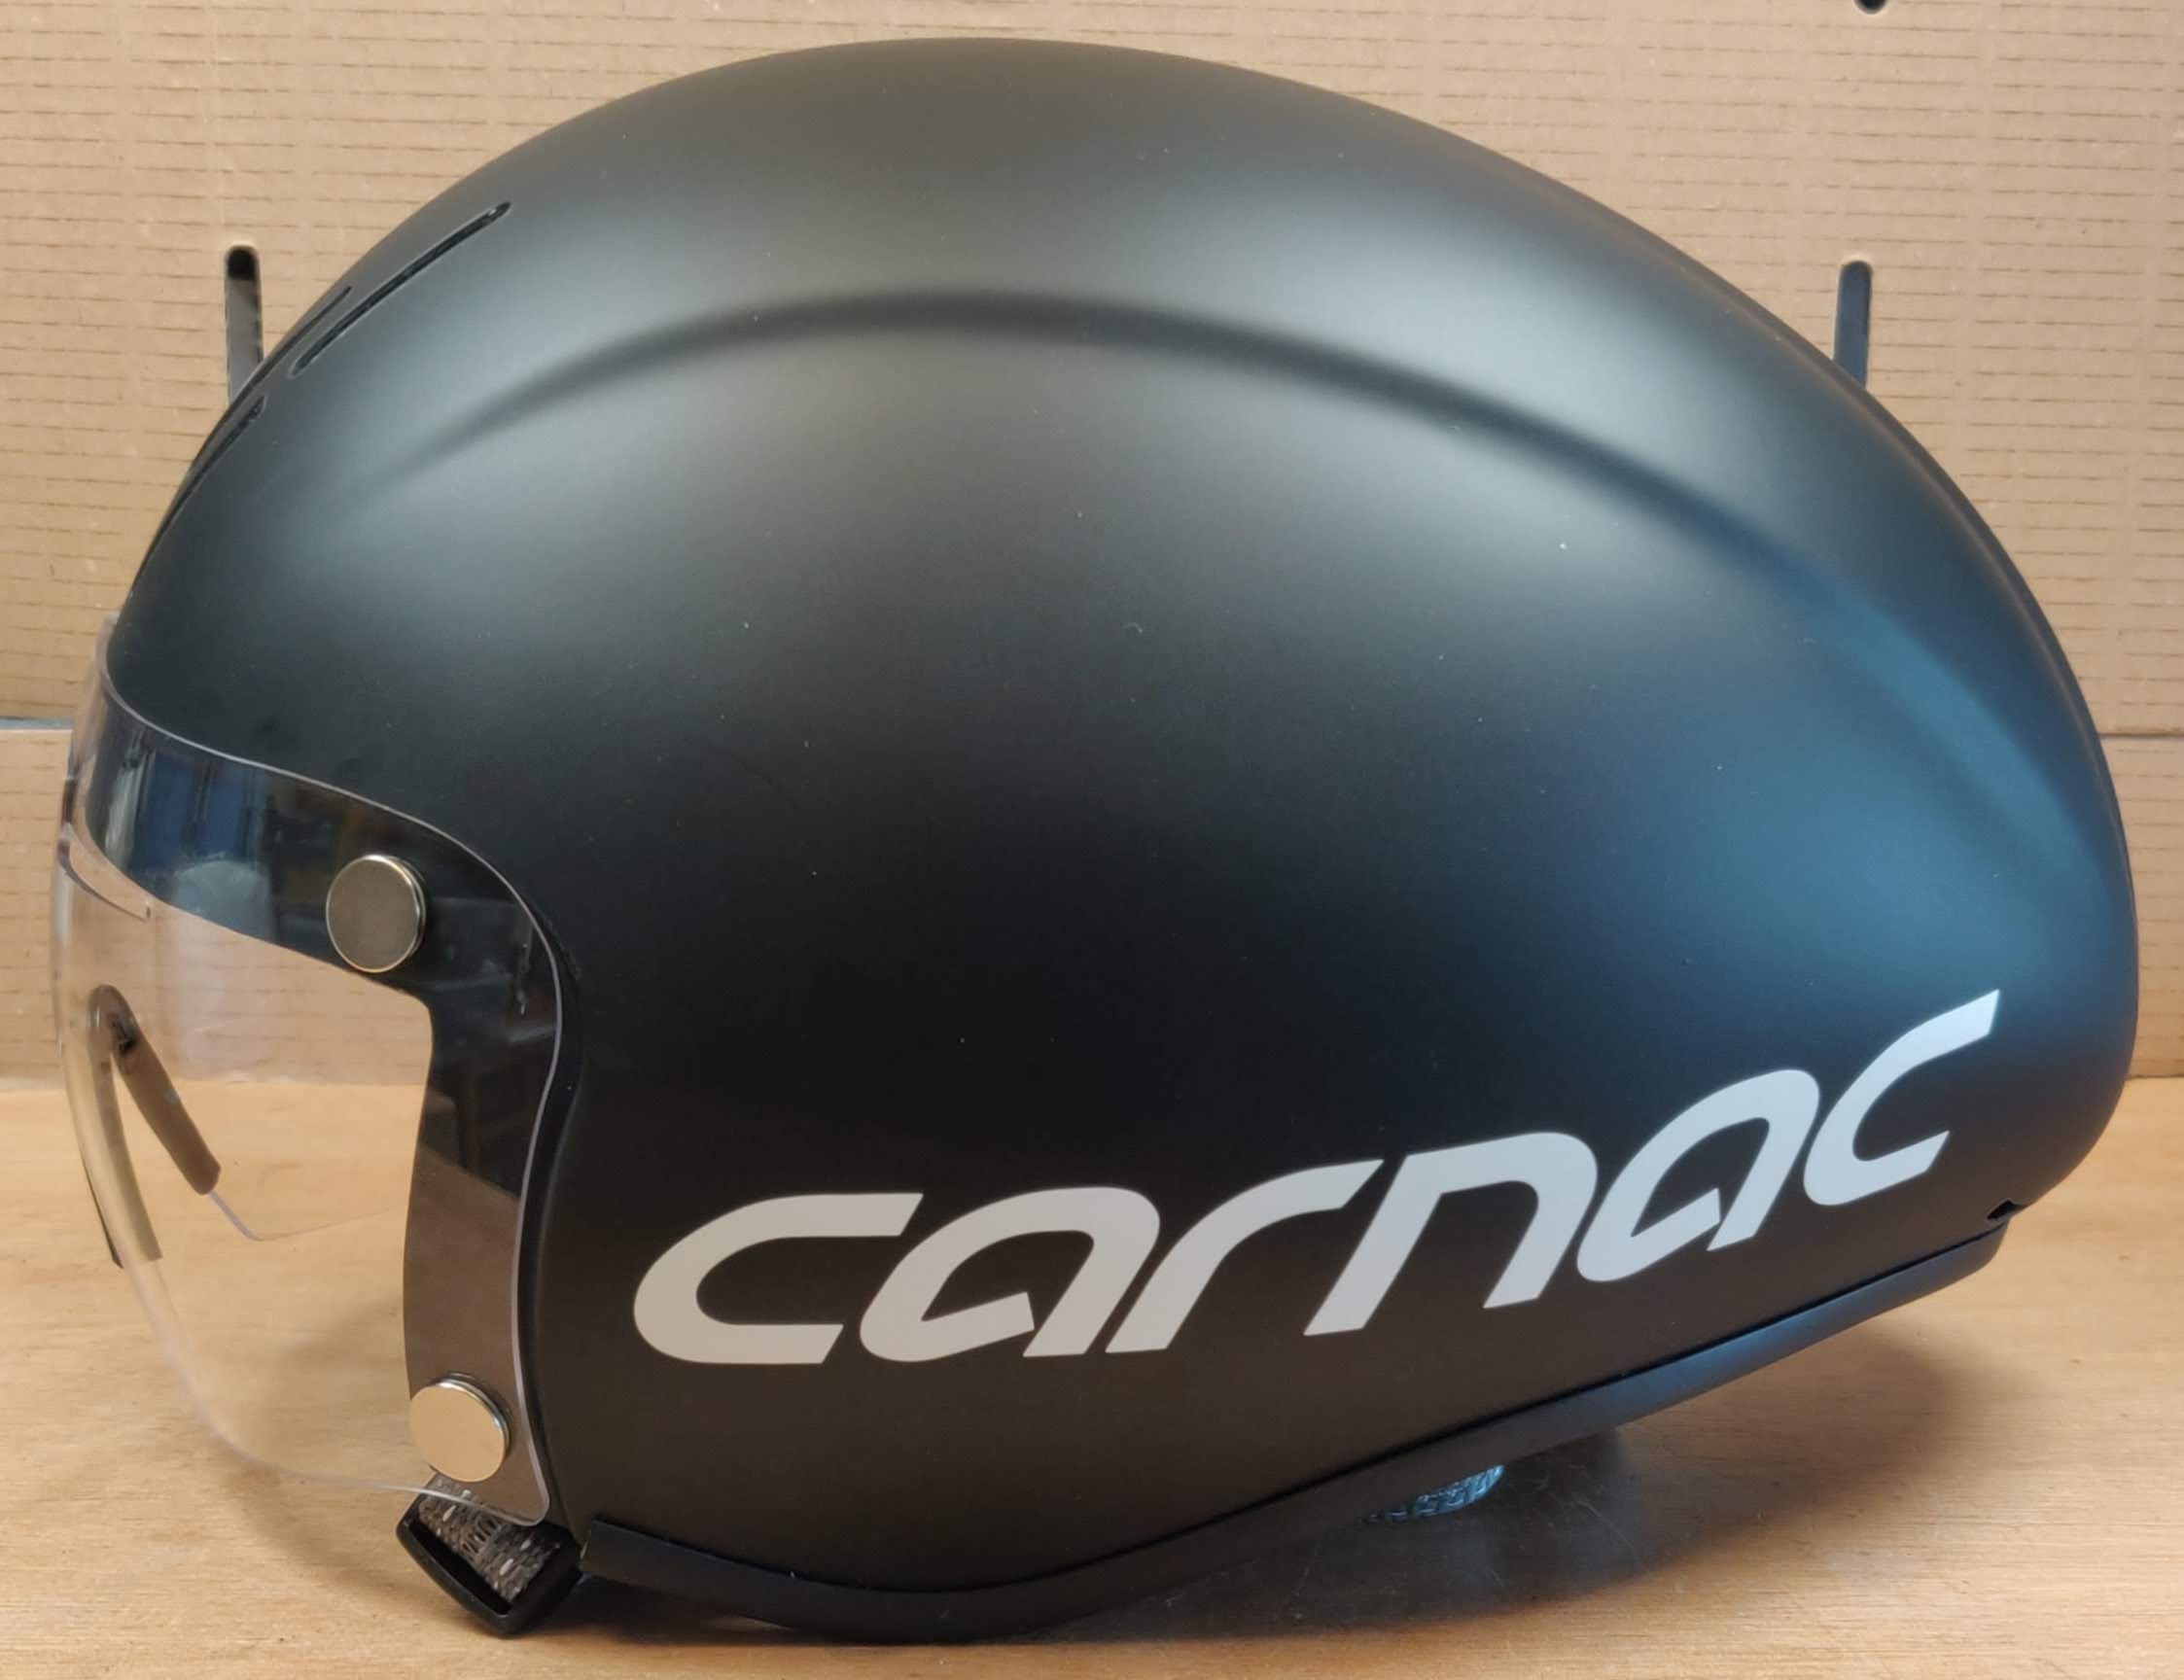 Carnac Kronus time trial helmet side view